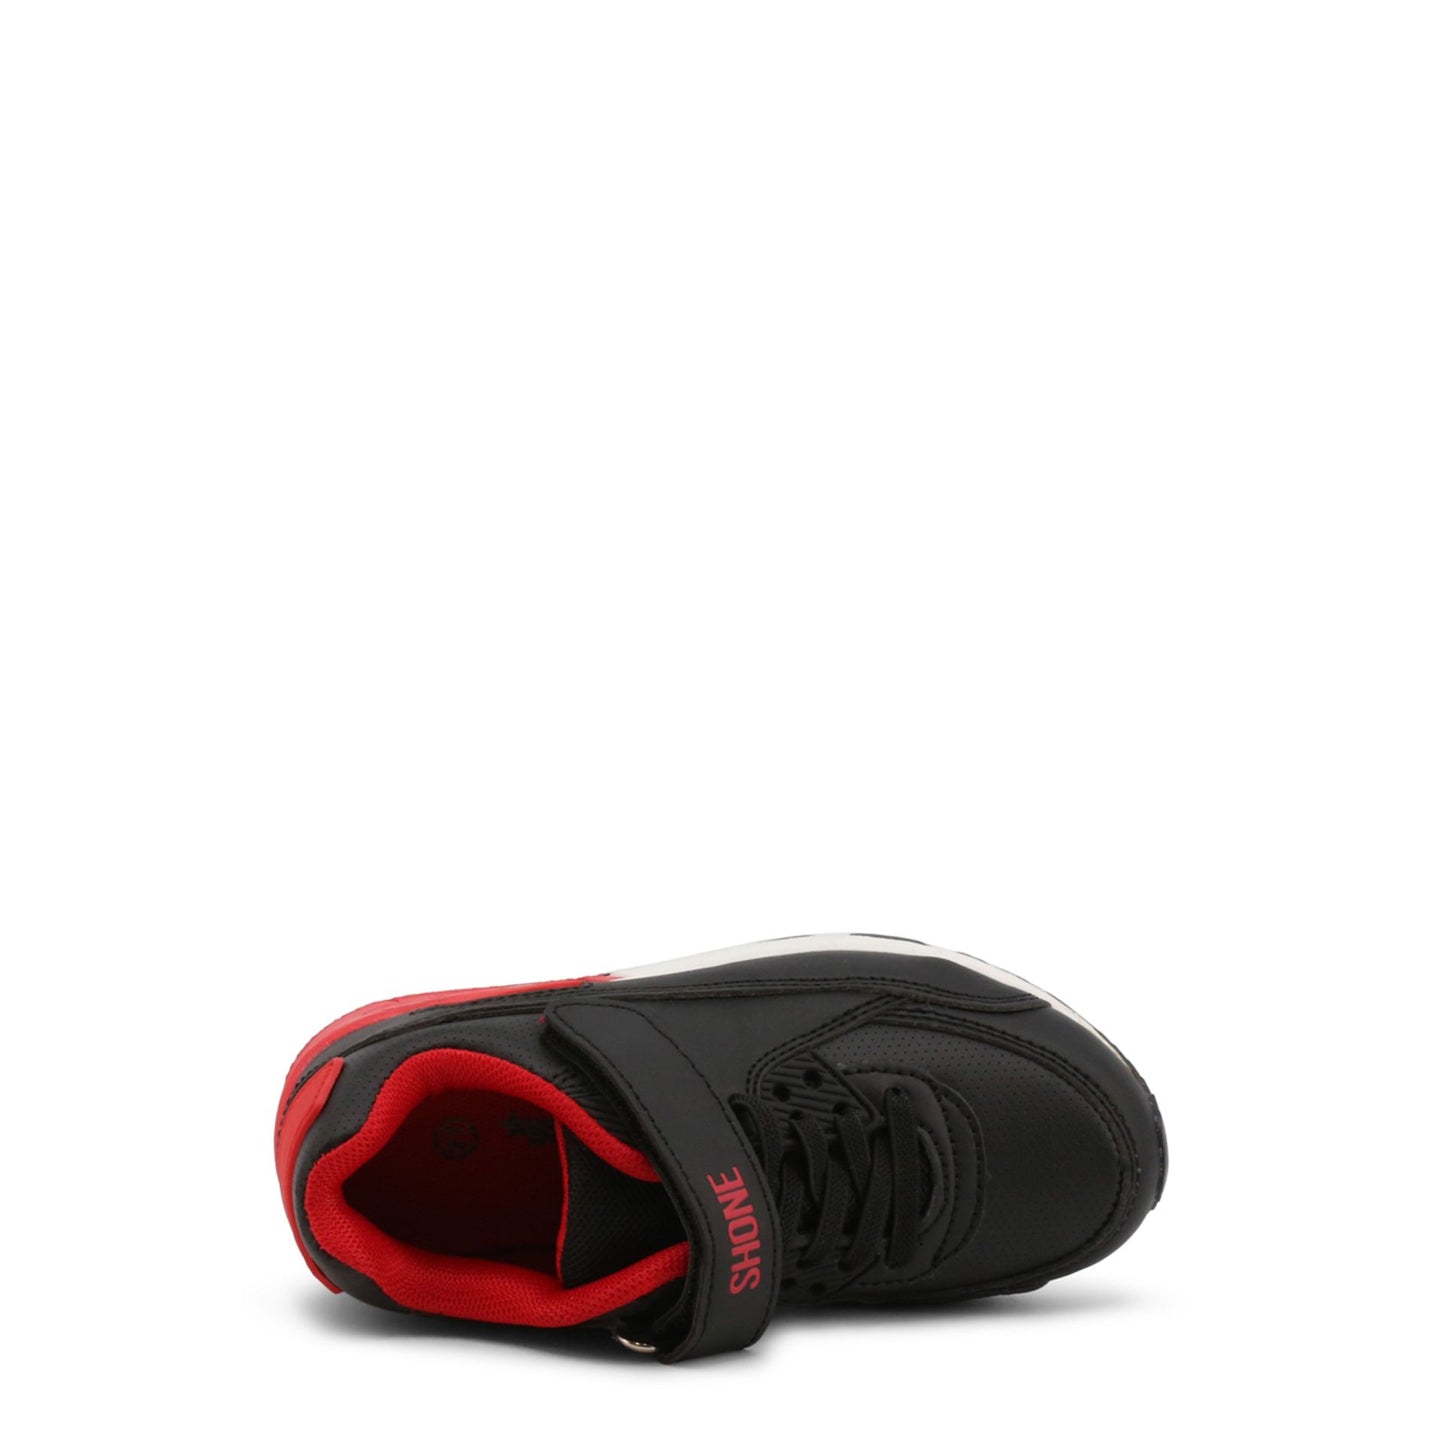 Scarpa sportiva bambino nero rosso con strappo, punta tonda e inserto nella suola